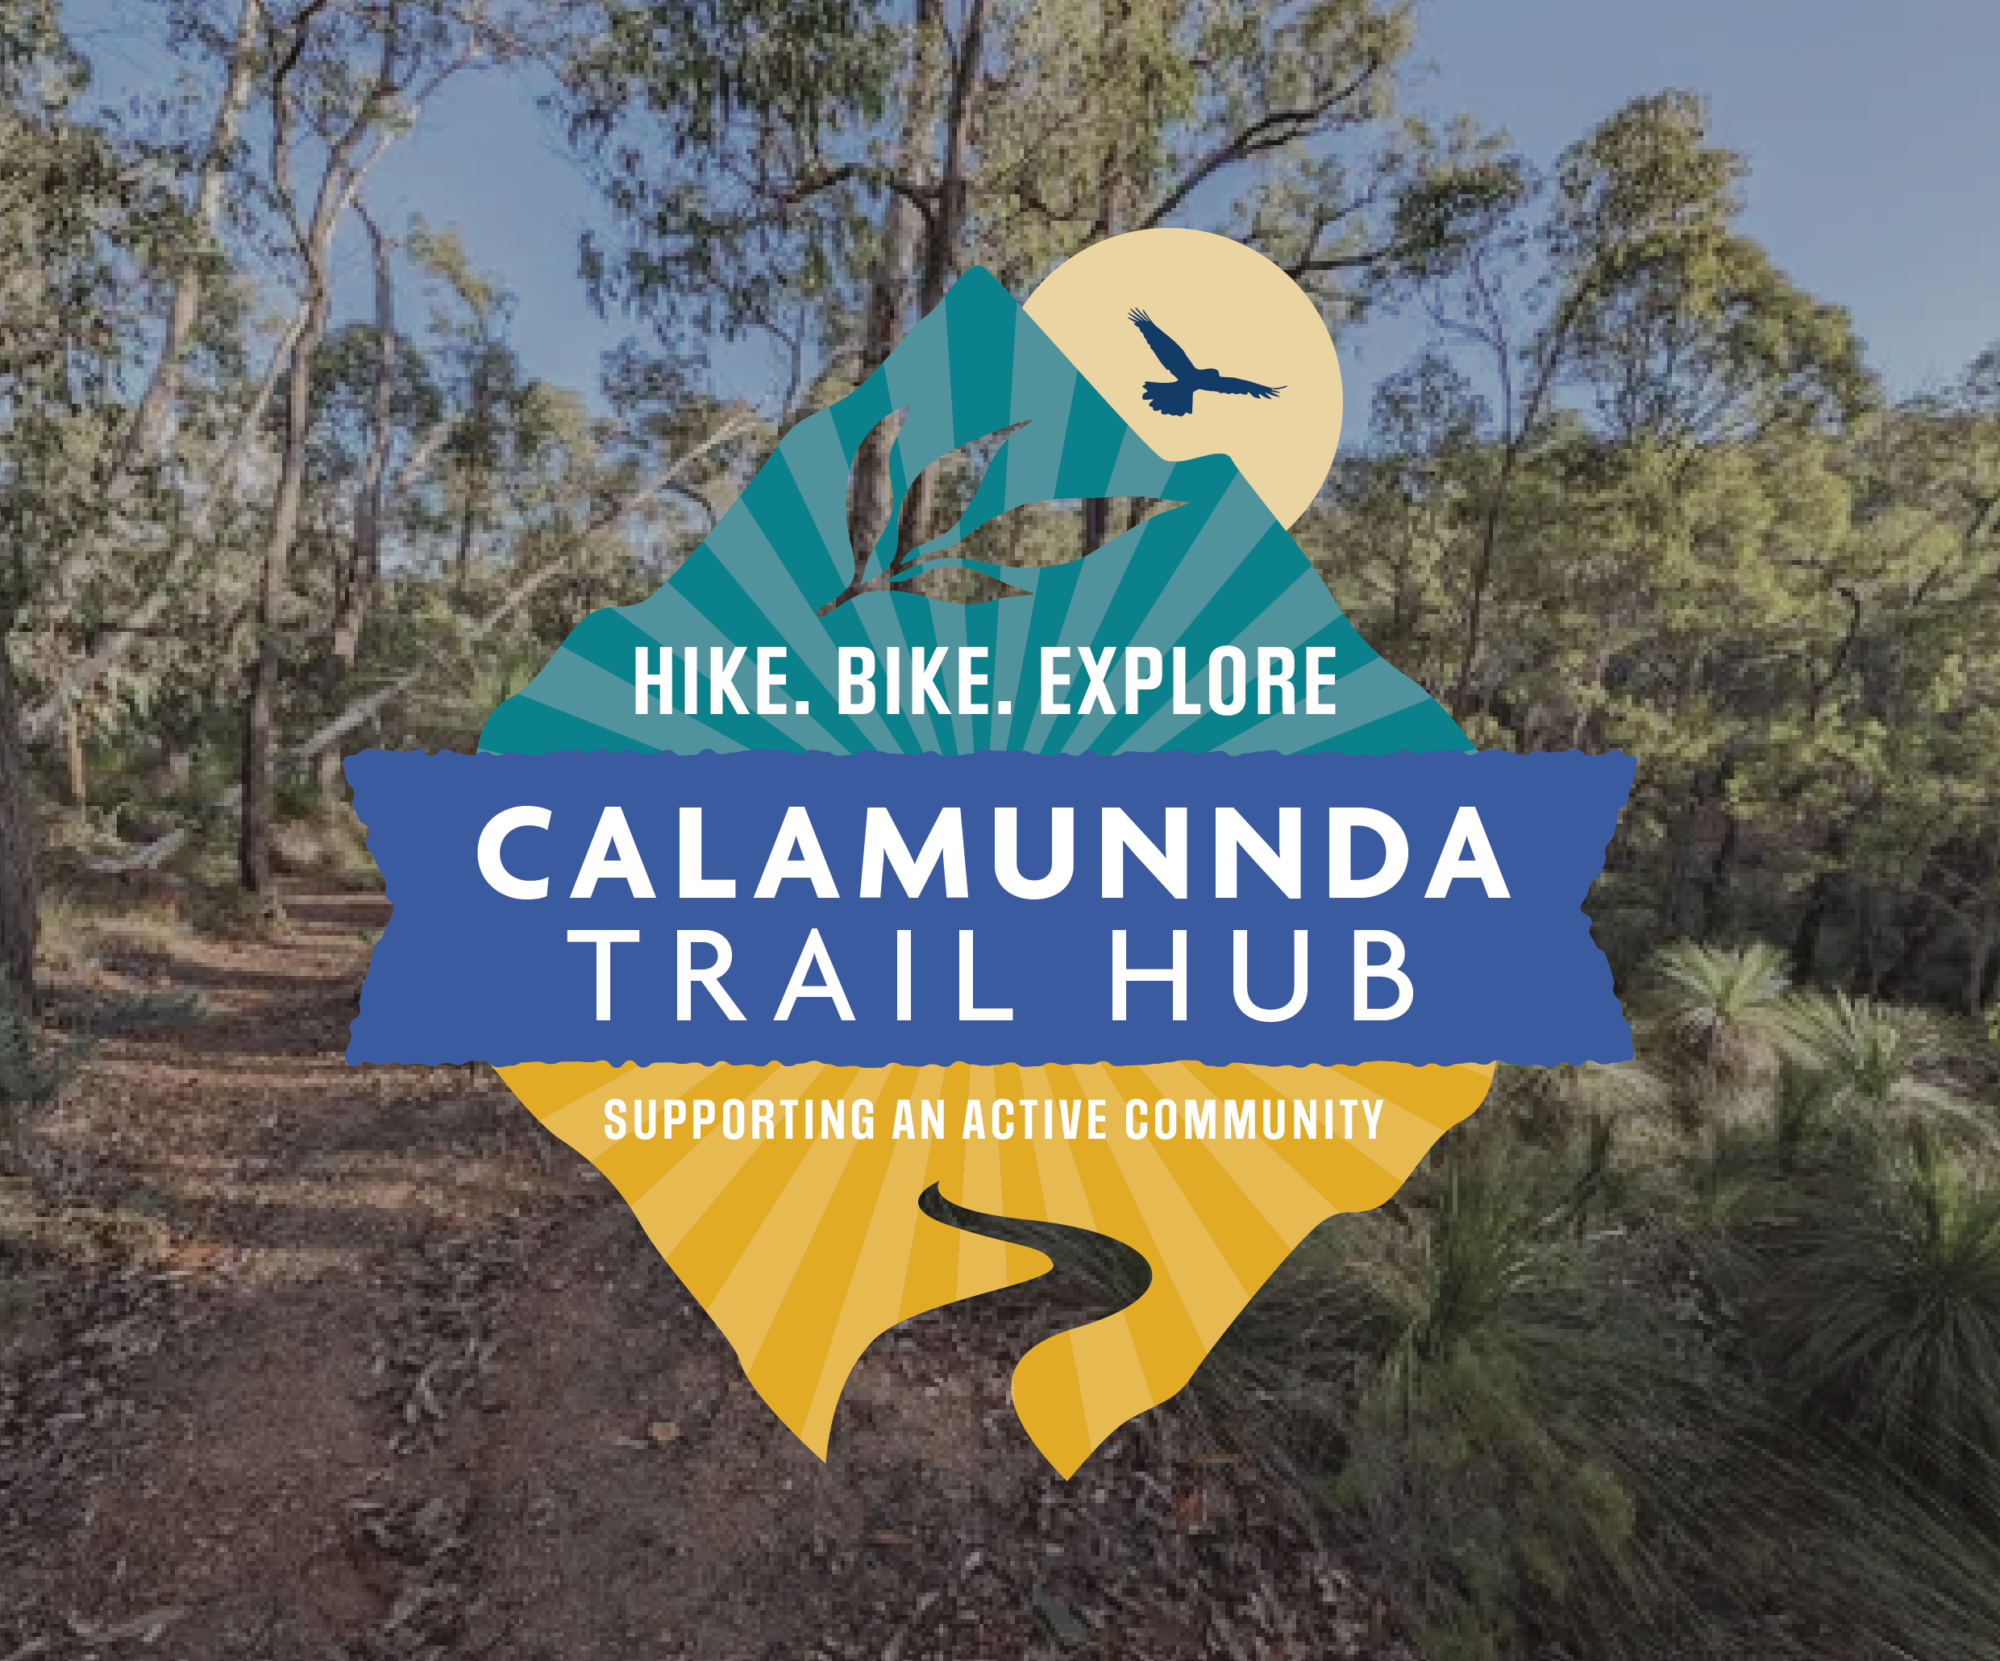 Calamunnda Trail Hub 01